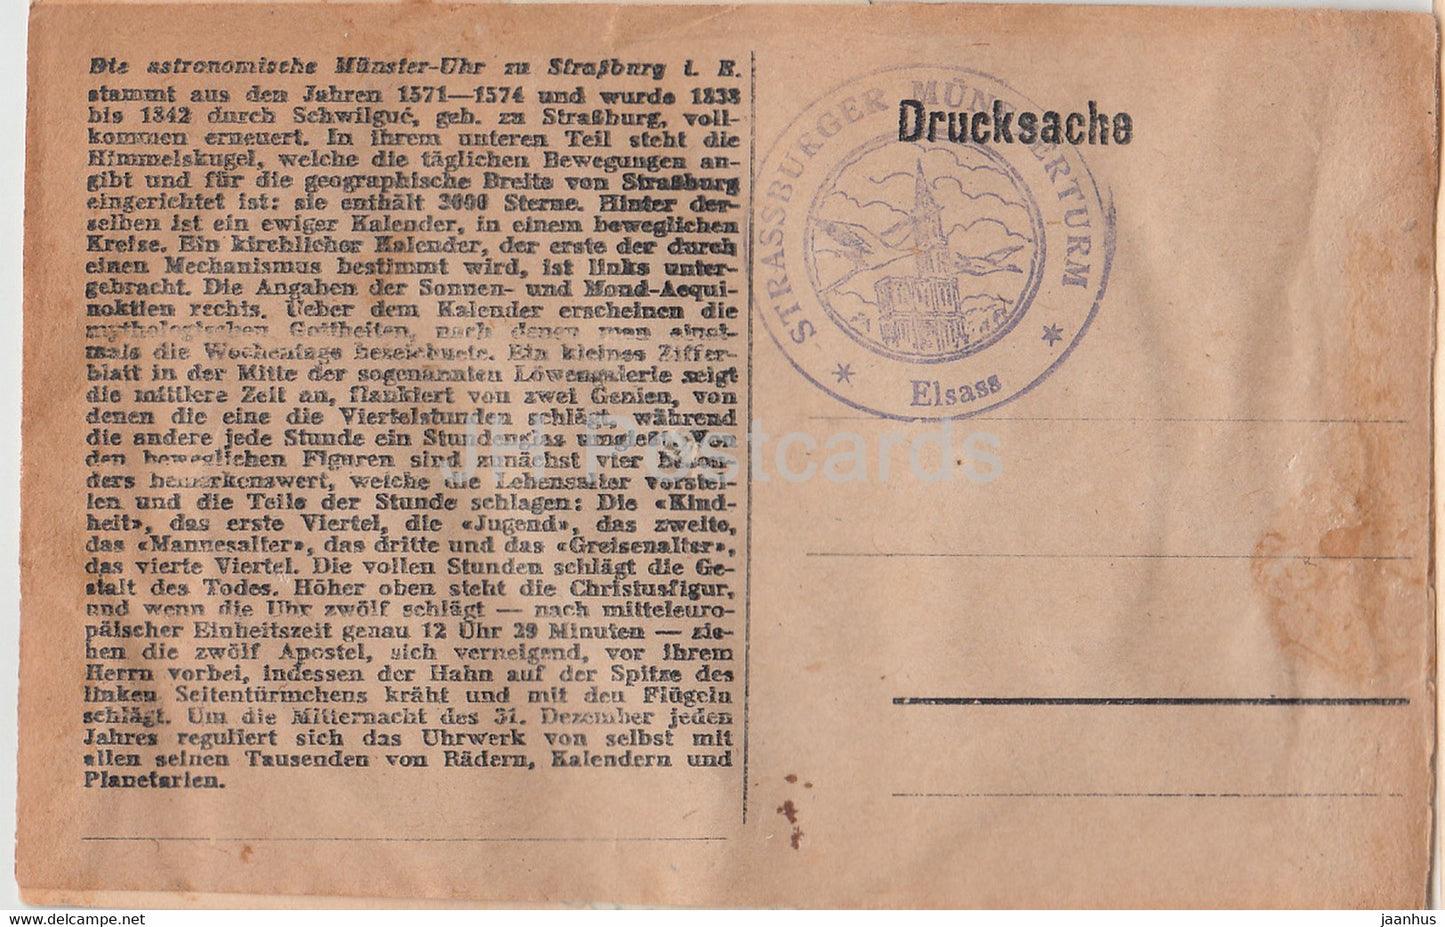 Die Astronomische Münster Uhr zu Straßburg - alte Postkarte - Frankreich - unbenutzt